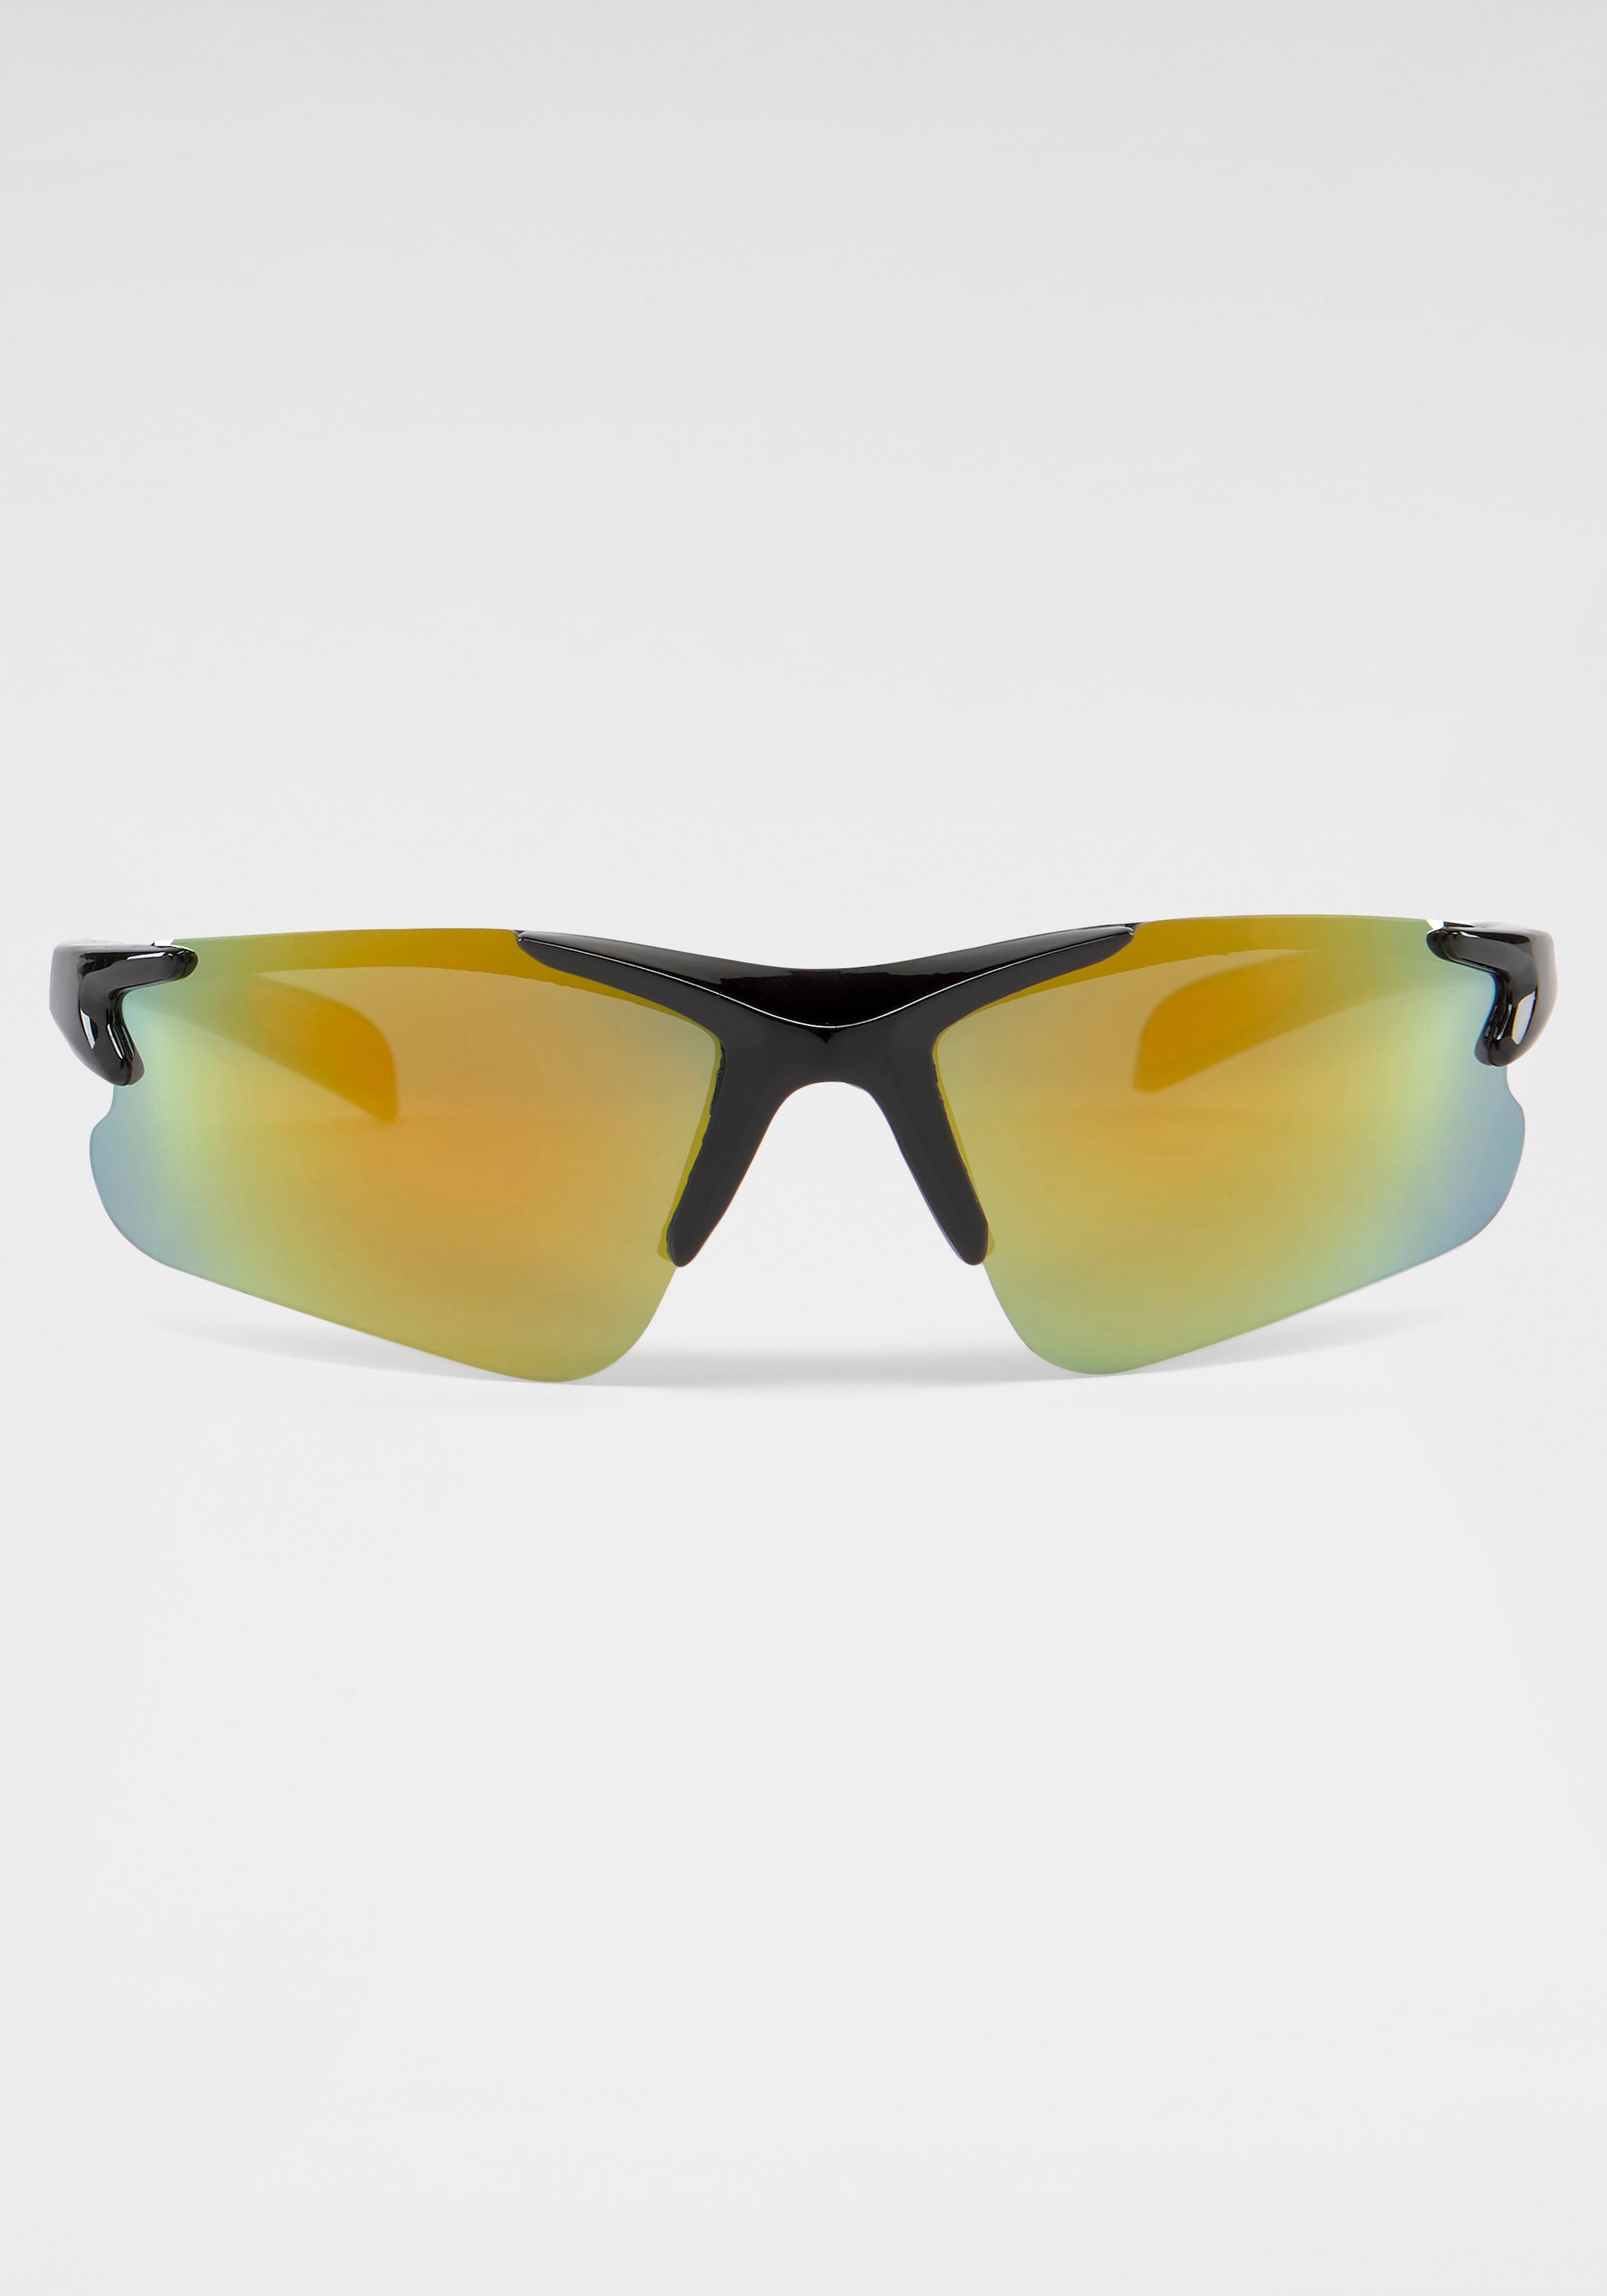 PRIMETTA Eyewear Sonnenbrille, online verspiegelten mit Gläsern kaufen